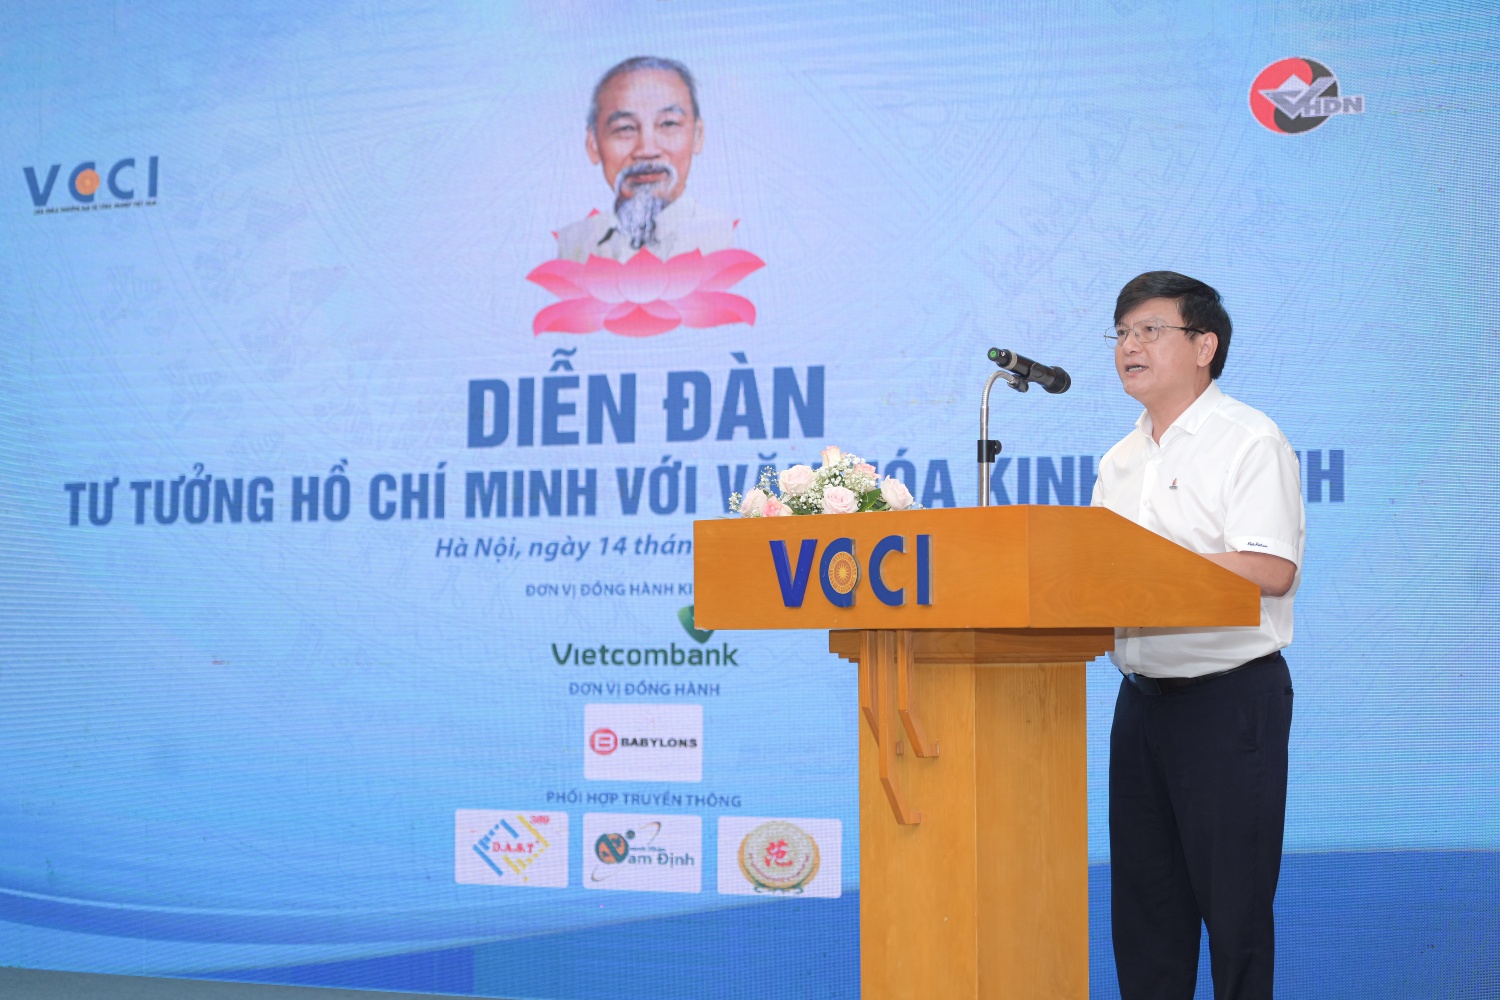 Petrovietnam tham dự Diễn đàn: "Tư tưởng Hồ Chí Minh với văn hóa doanh nghiệp"